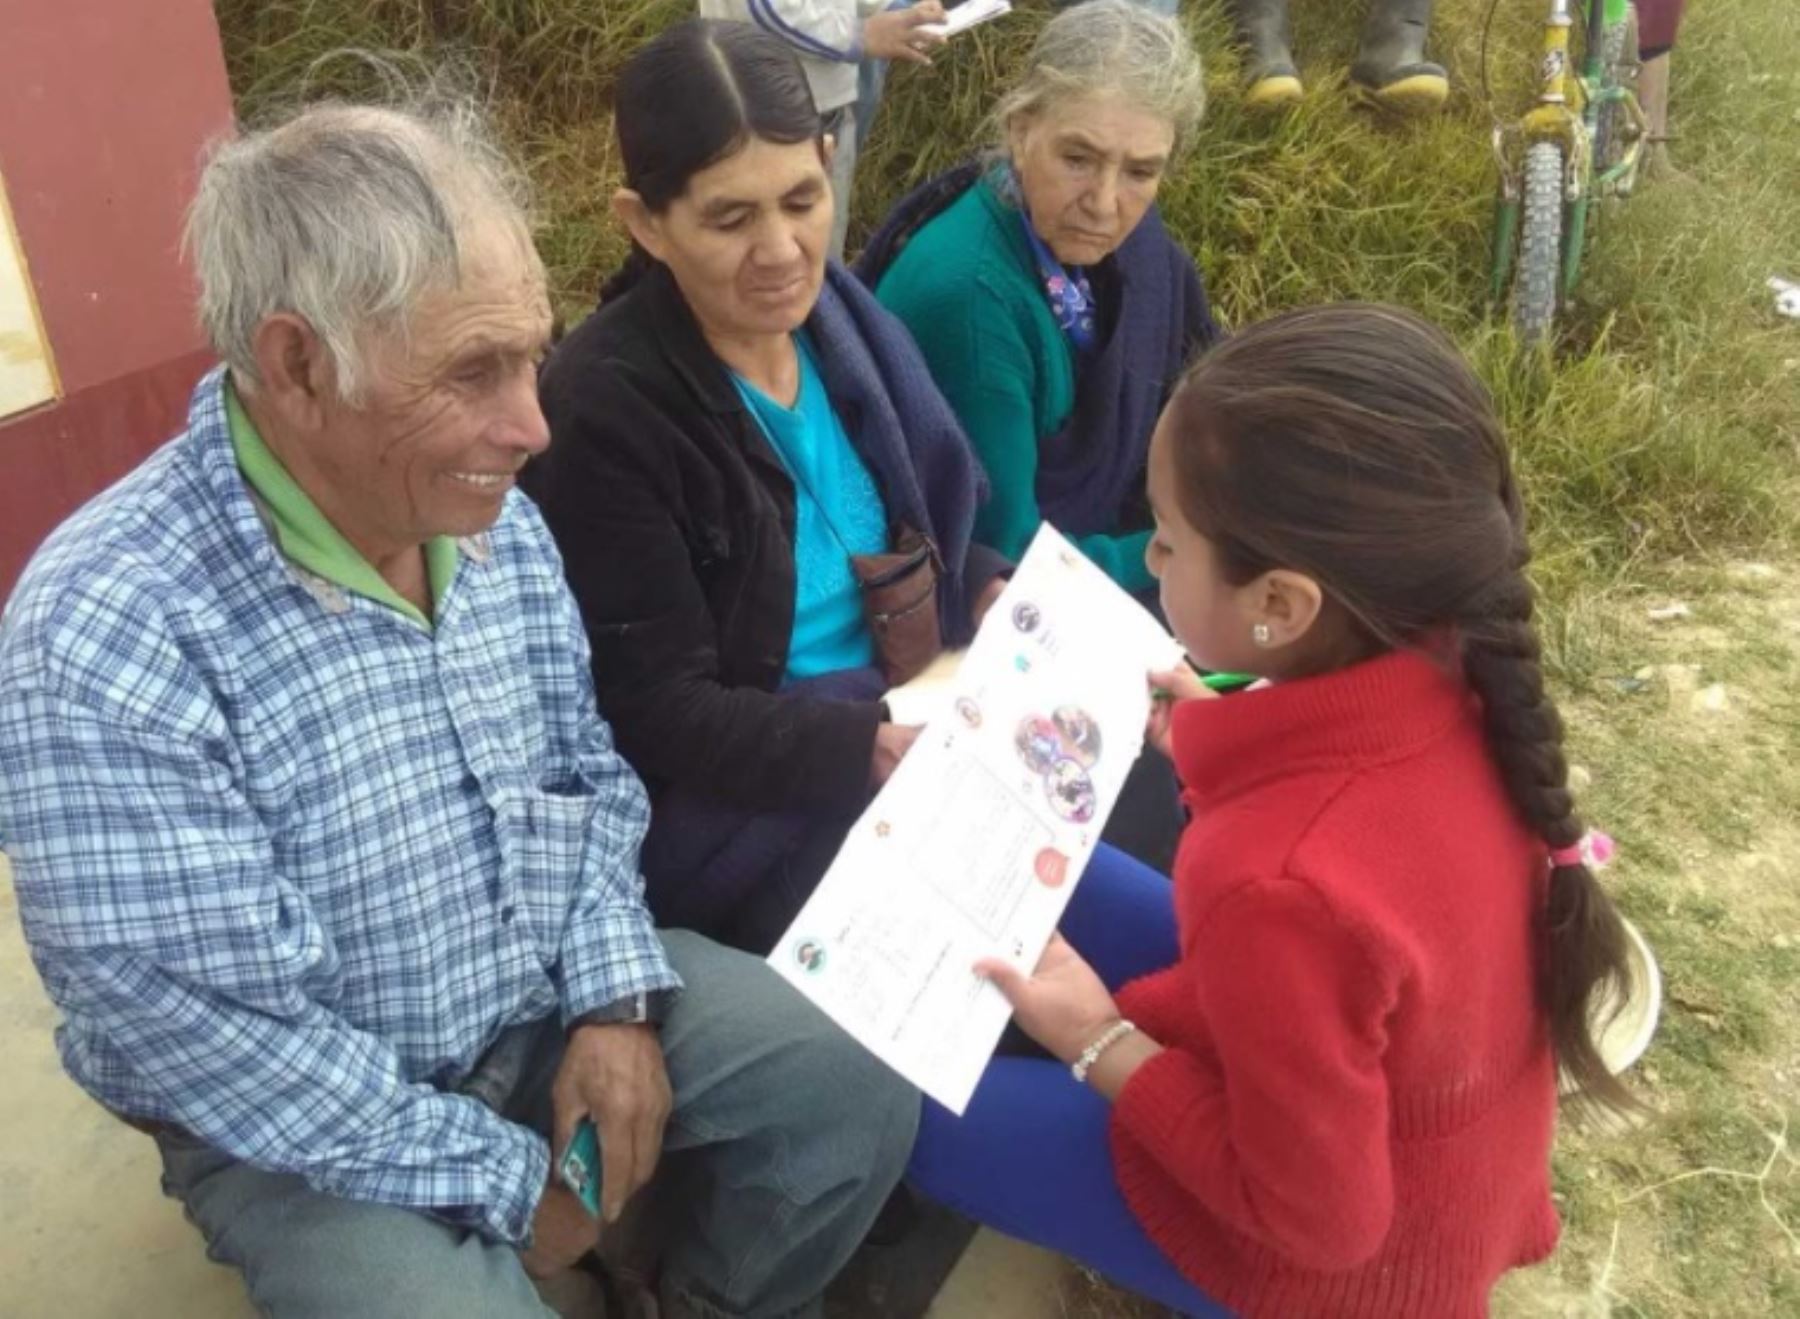 Las regiones de Piura y Cajamarca registran, hasta la fecha, la mayor cantidad de participantes al Concurso Nacional Escolar de Dibujo y Narración “Los Abuelos Ahora”, convocado por el Programa Nacional de Asistencia Solidaria Pensión 65 del Ministerio de Desarrollo e Inclusión Social (Midis), cuya convocatoria termina el próximo 9 de octubre.